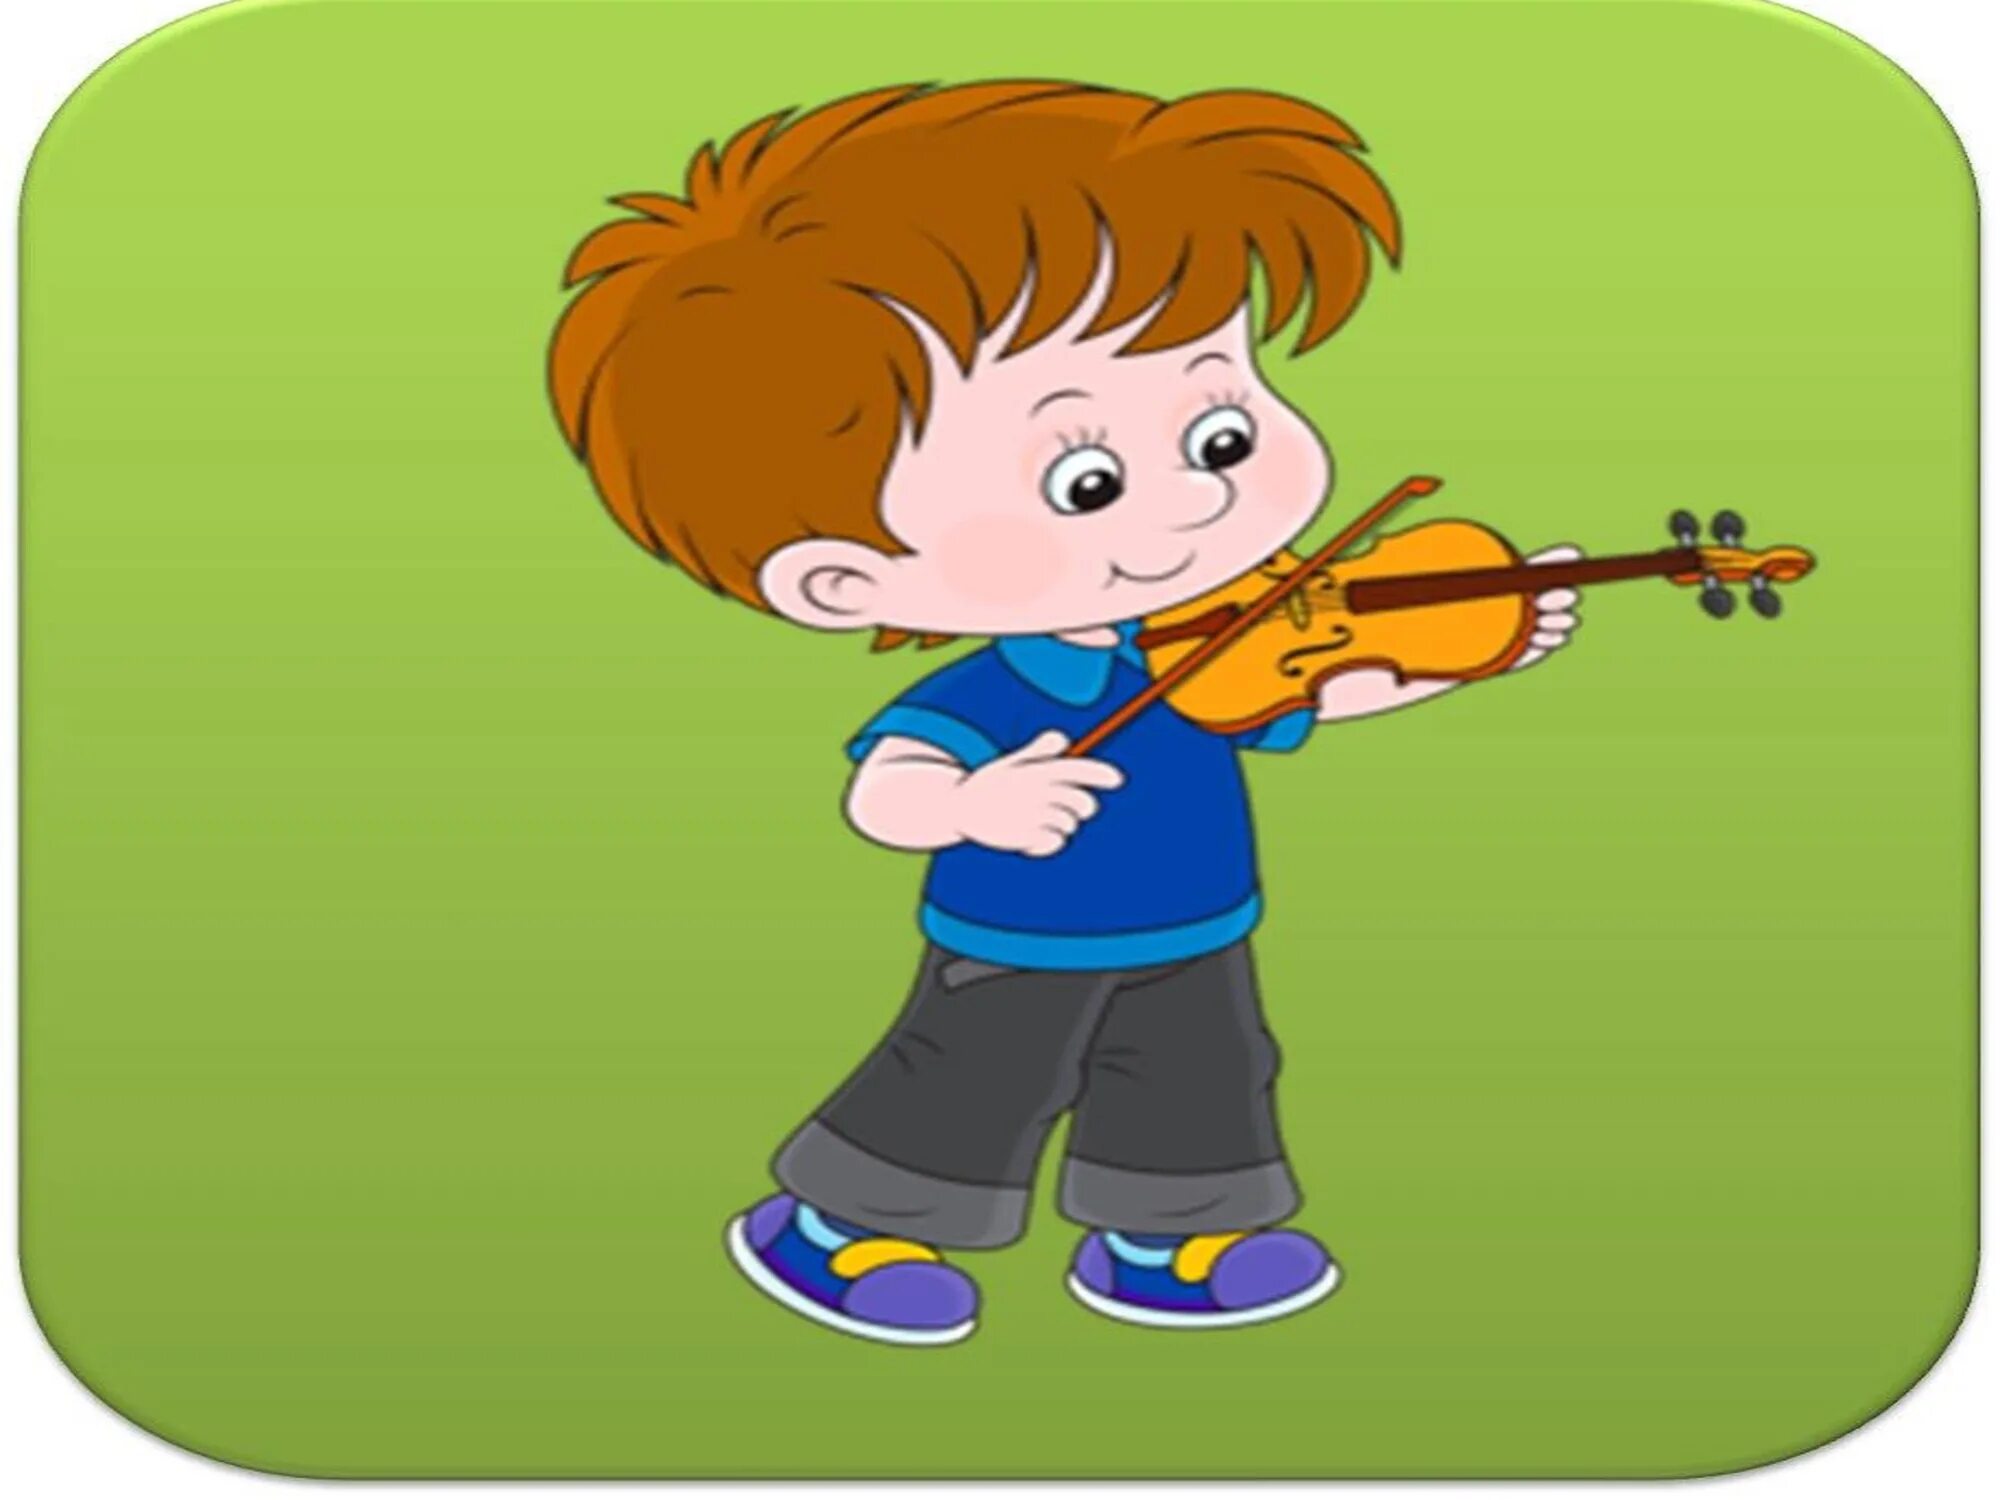 Музыка мальчика люблю. Дети играют на музыкальных инструментах. Музыкальные картинки для детей. Нарисованные дети играют на музыкальных инструментах. Музыкальные инструменты для детей.